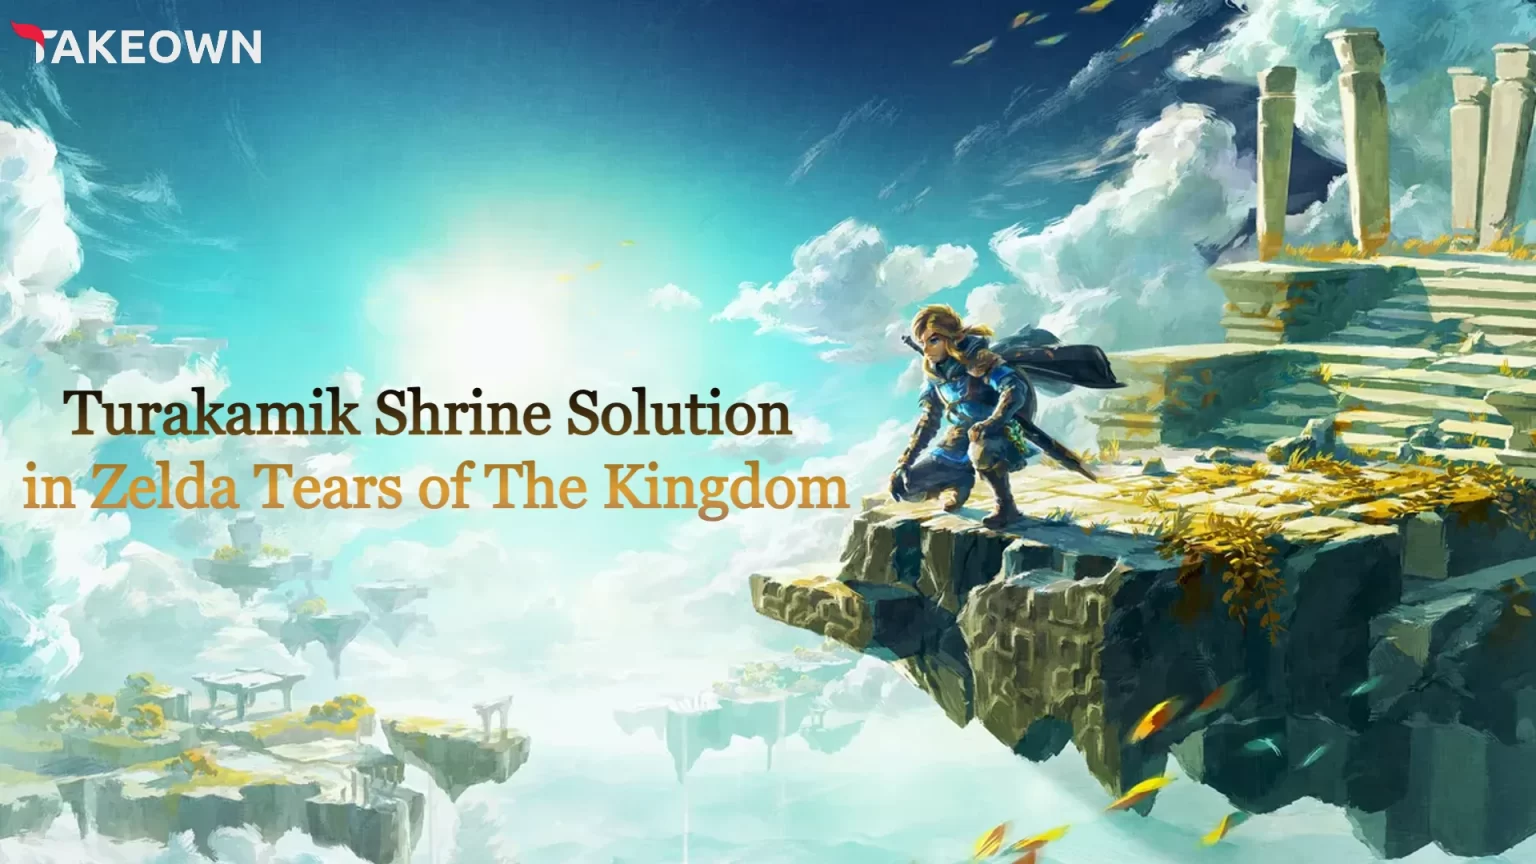 Turakamik Shrine Solution in Zelda Tears of The Kingdom